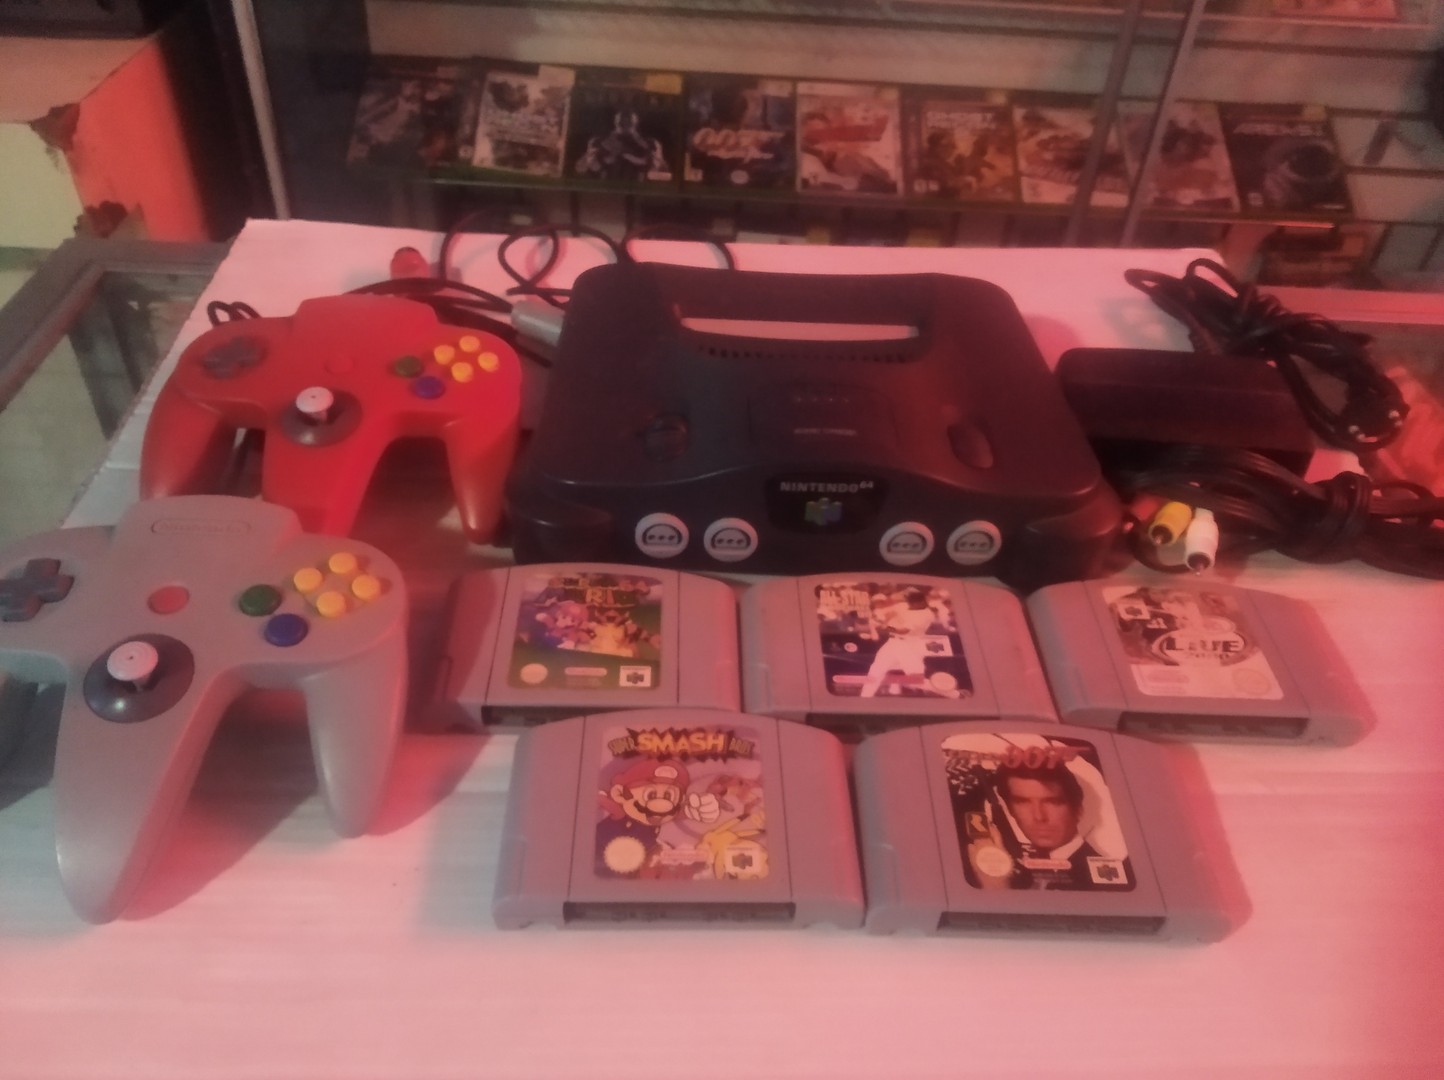 consolas y videojuegos - Nintendo 64 europeo para coleccionista